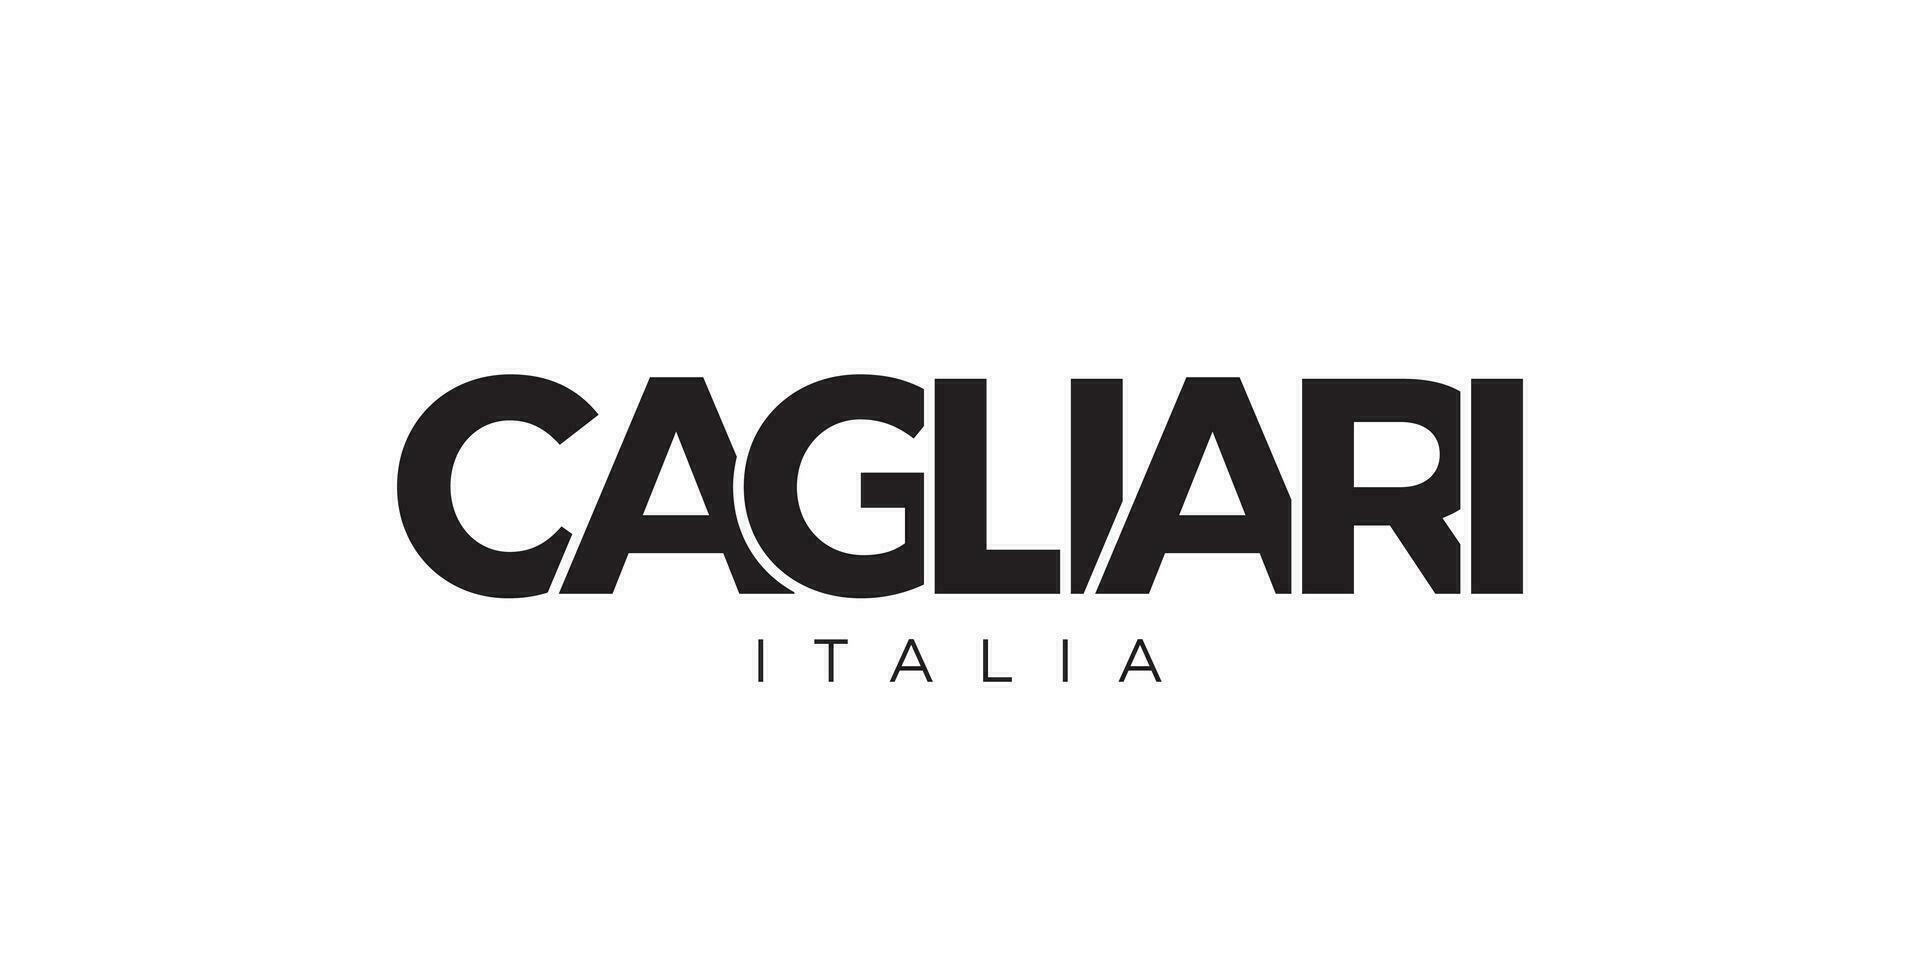 cagliari im das Italien Emblem. das Design Eigenschaften ein geometrisch Stil, Vektor Illustration mit Fett gedruckt Typografie im ein modern Schriftart. das Grafik Slogan Beschriftung.